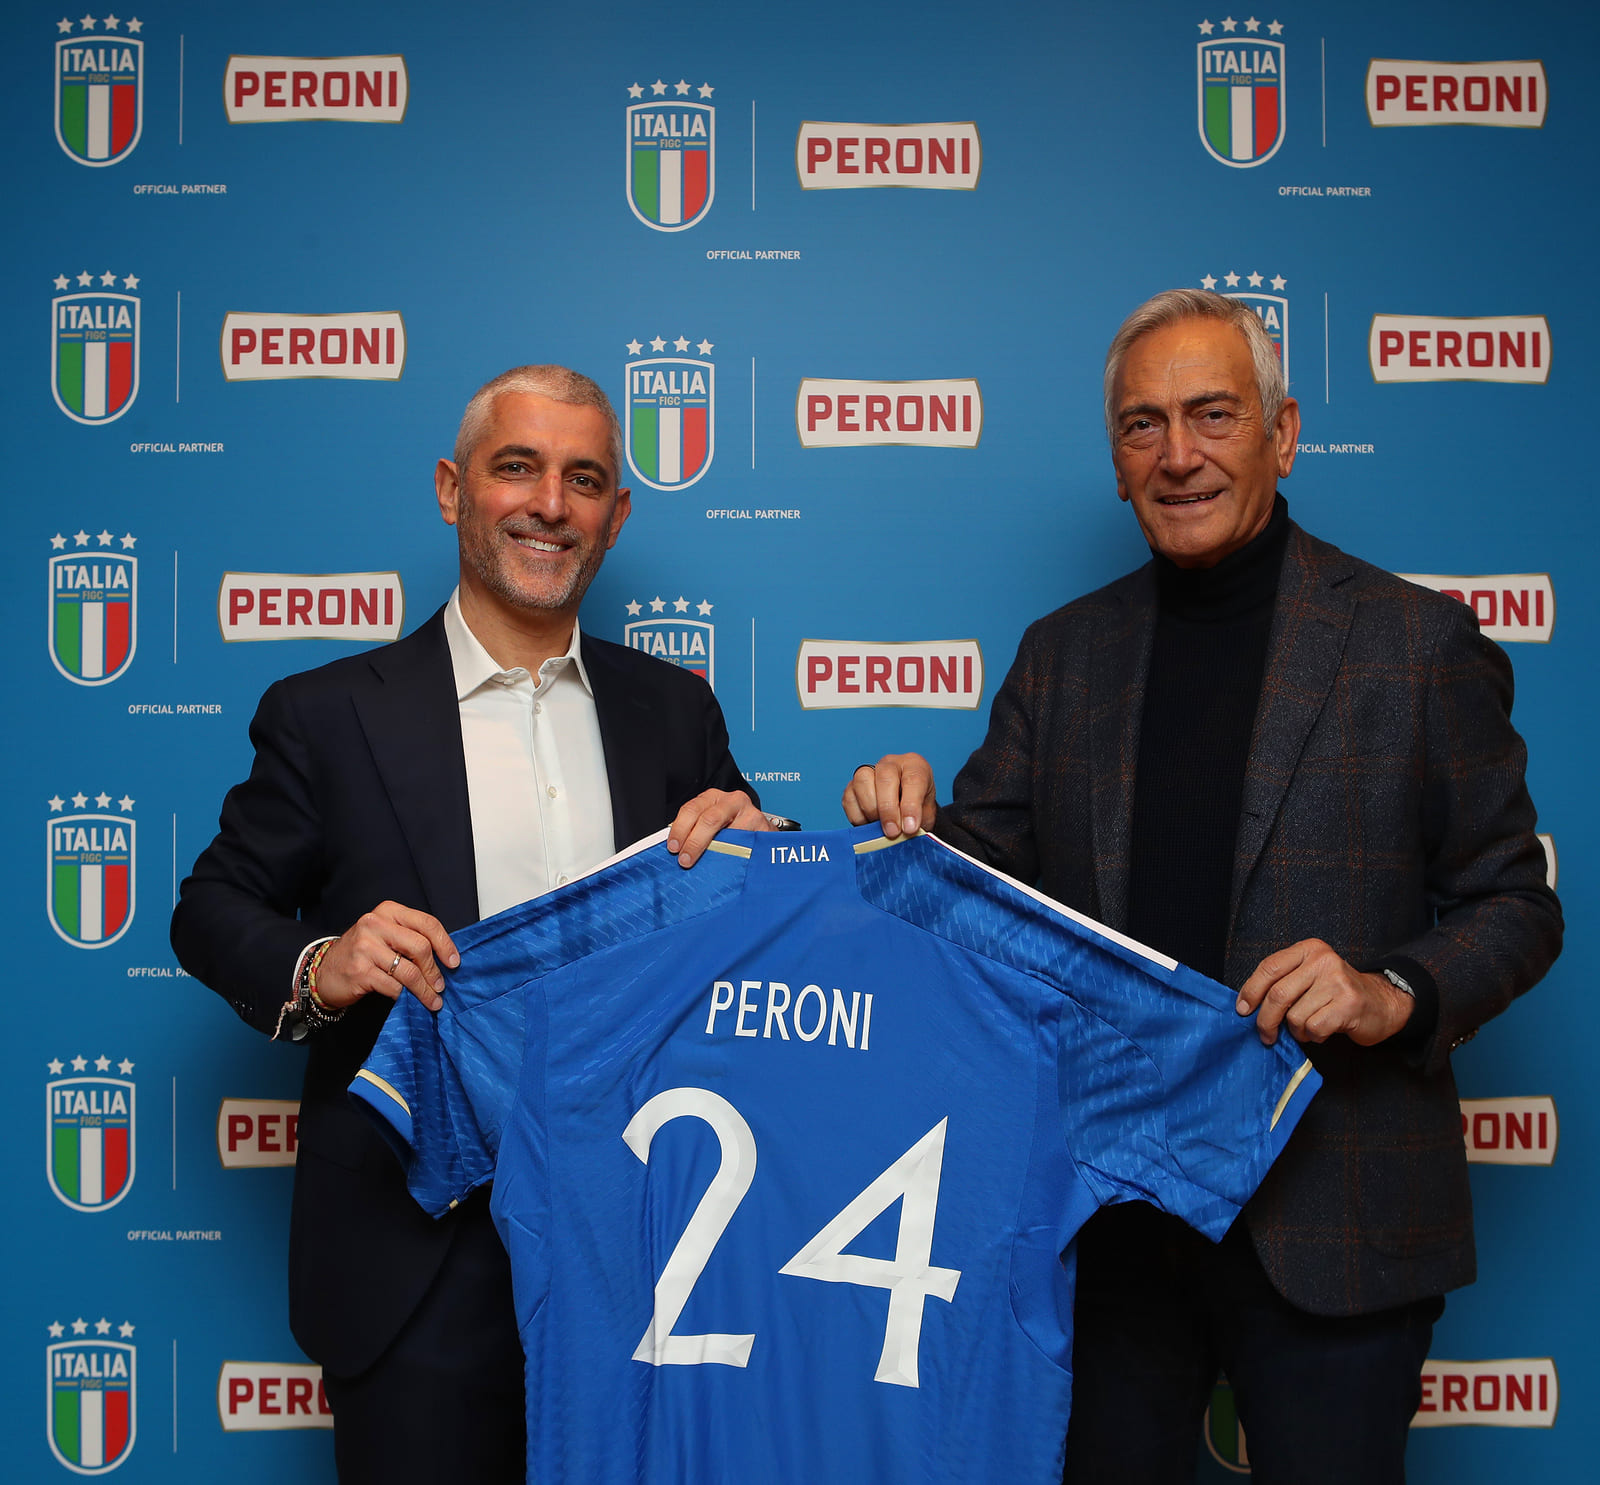 Peroni è official partner delle Nazionali Italiane di Calcio